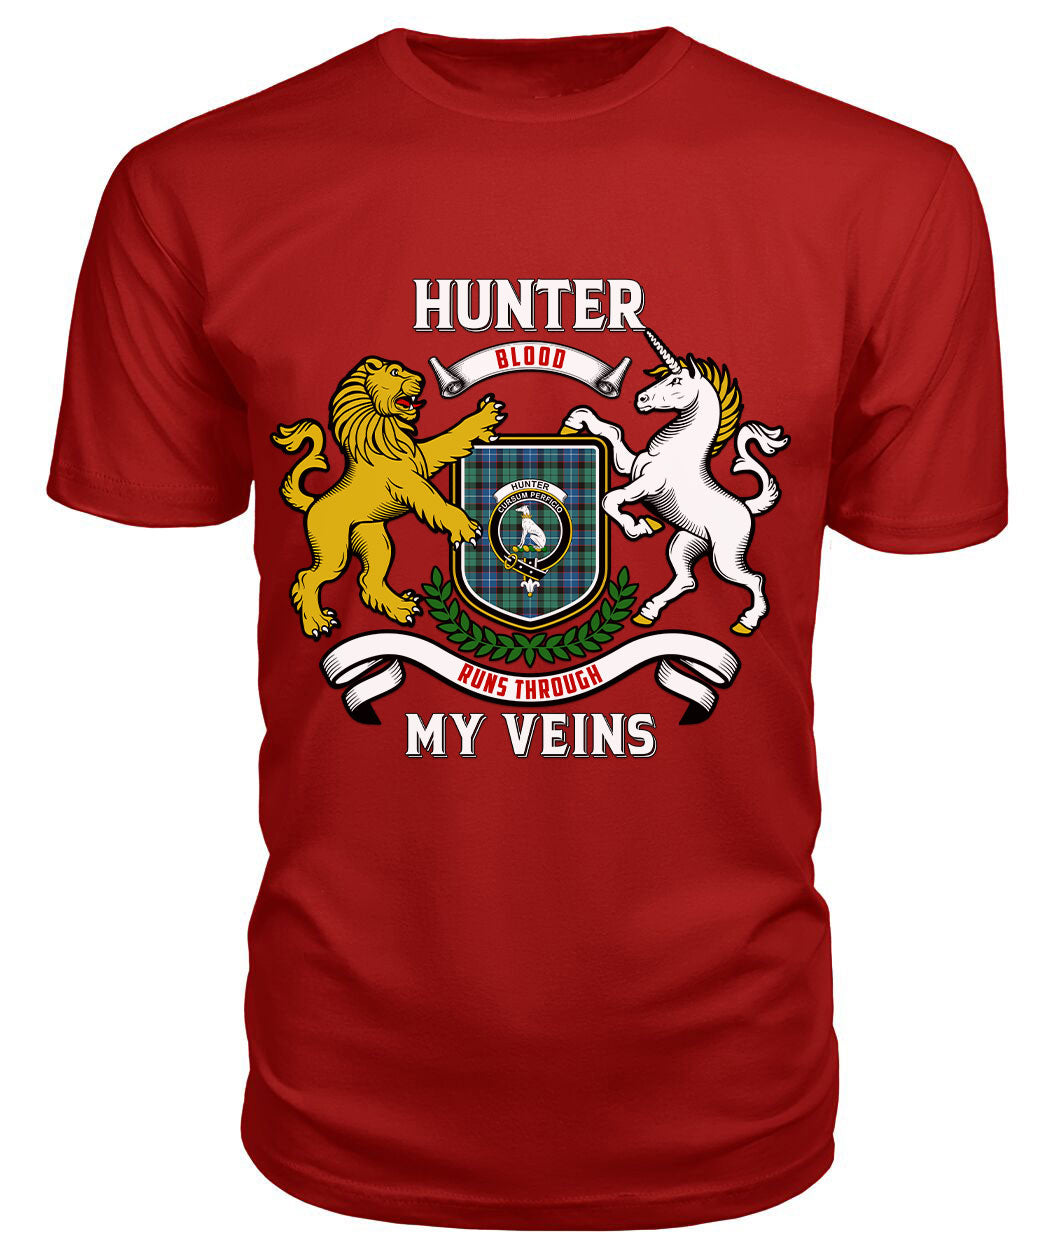 Hunter Ancient Tartan Crest 2D T-shirt - Blood Runs Through My Veins Style